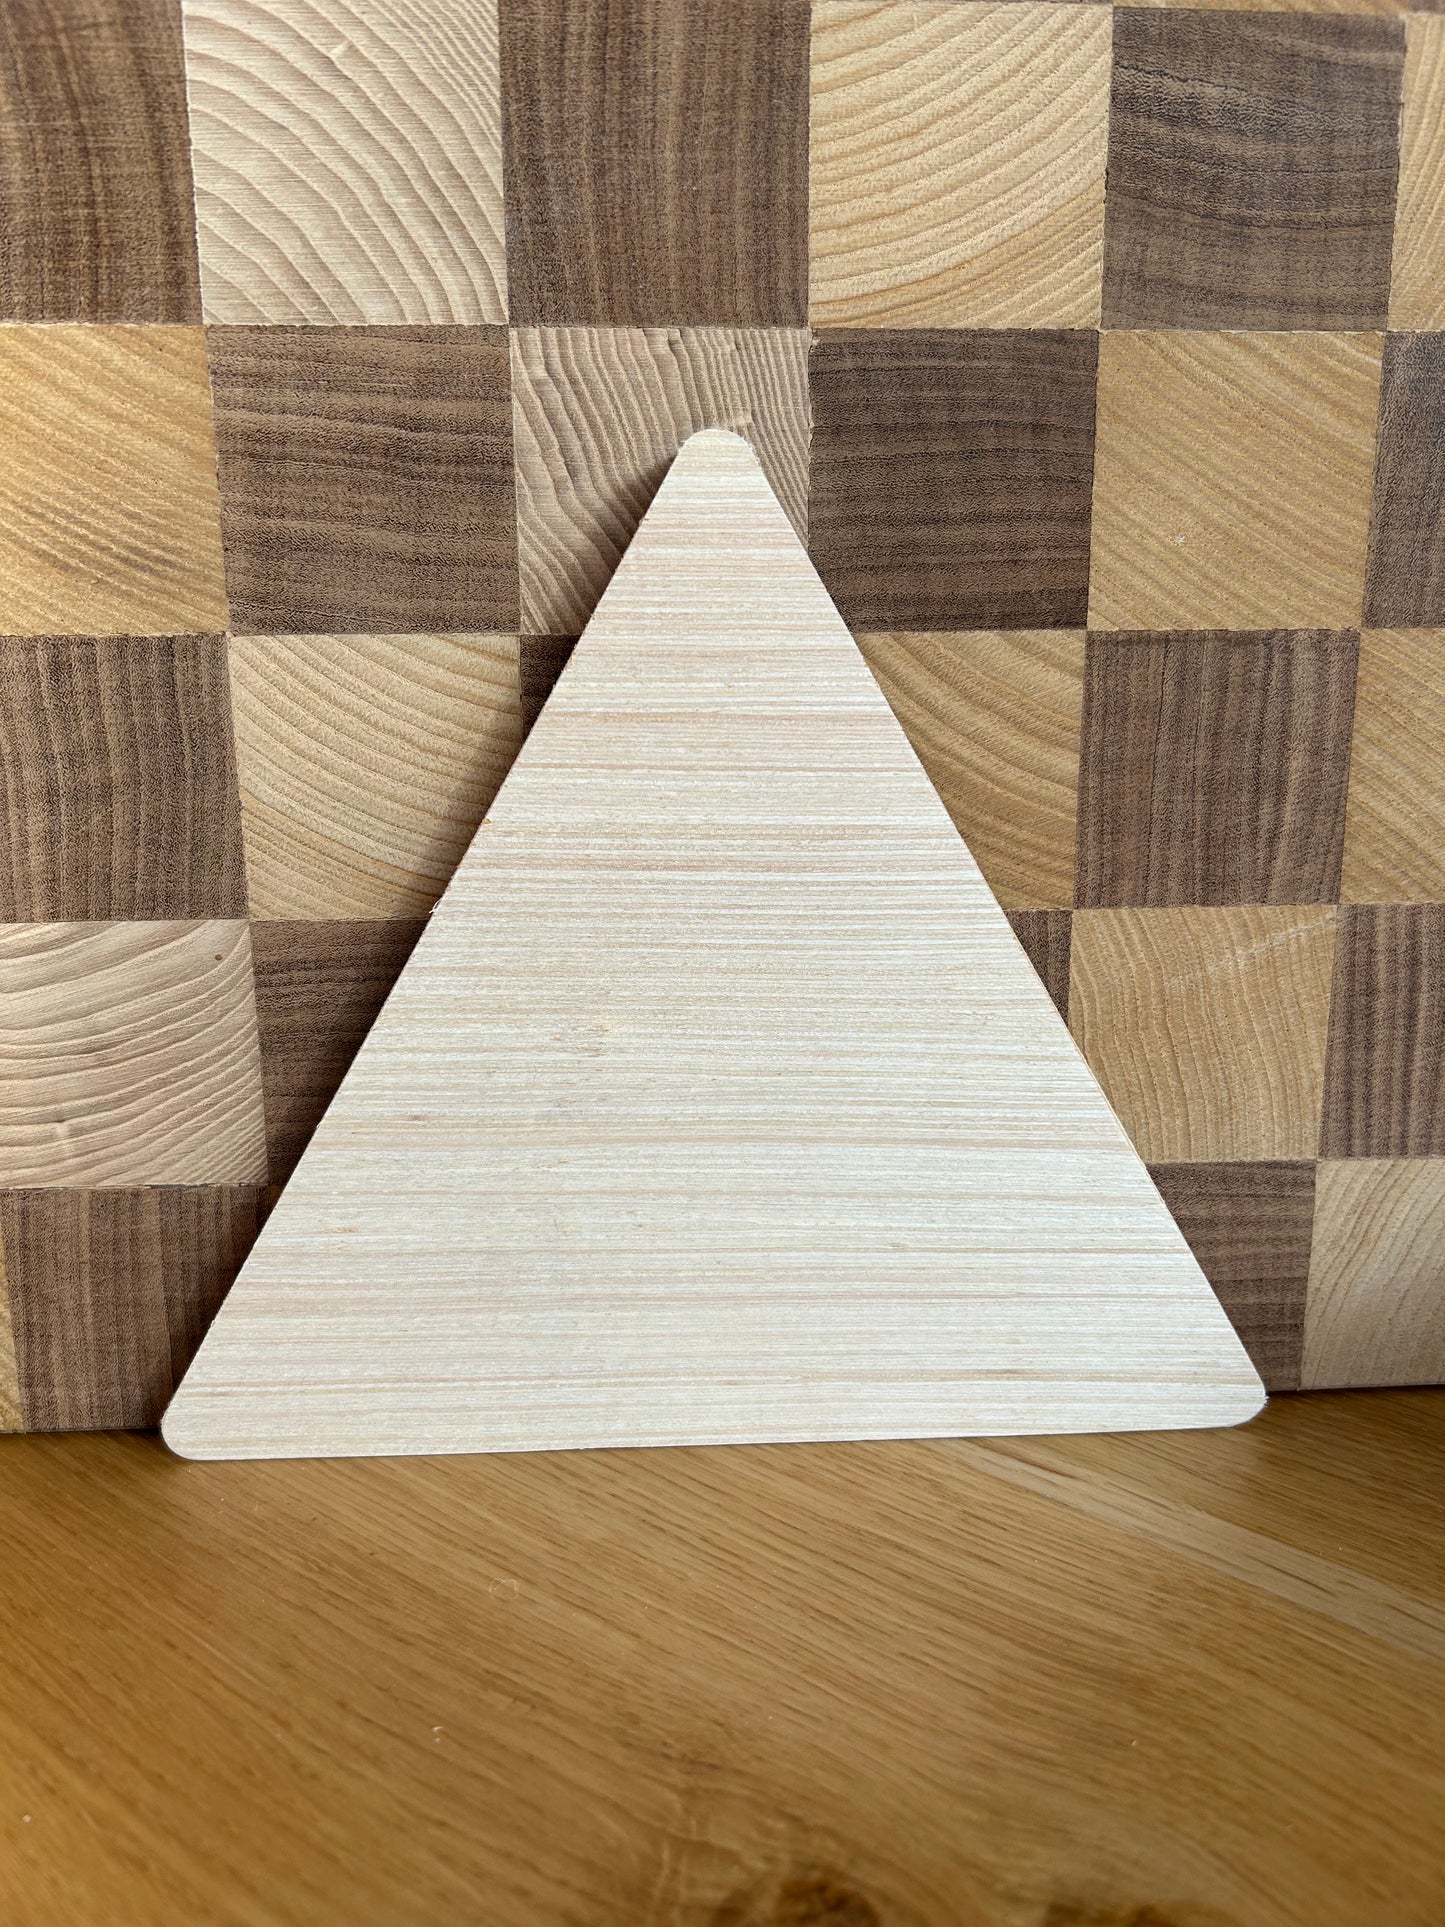 Triawood - Forme in legno per creare - Spessore 10 mm